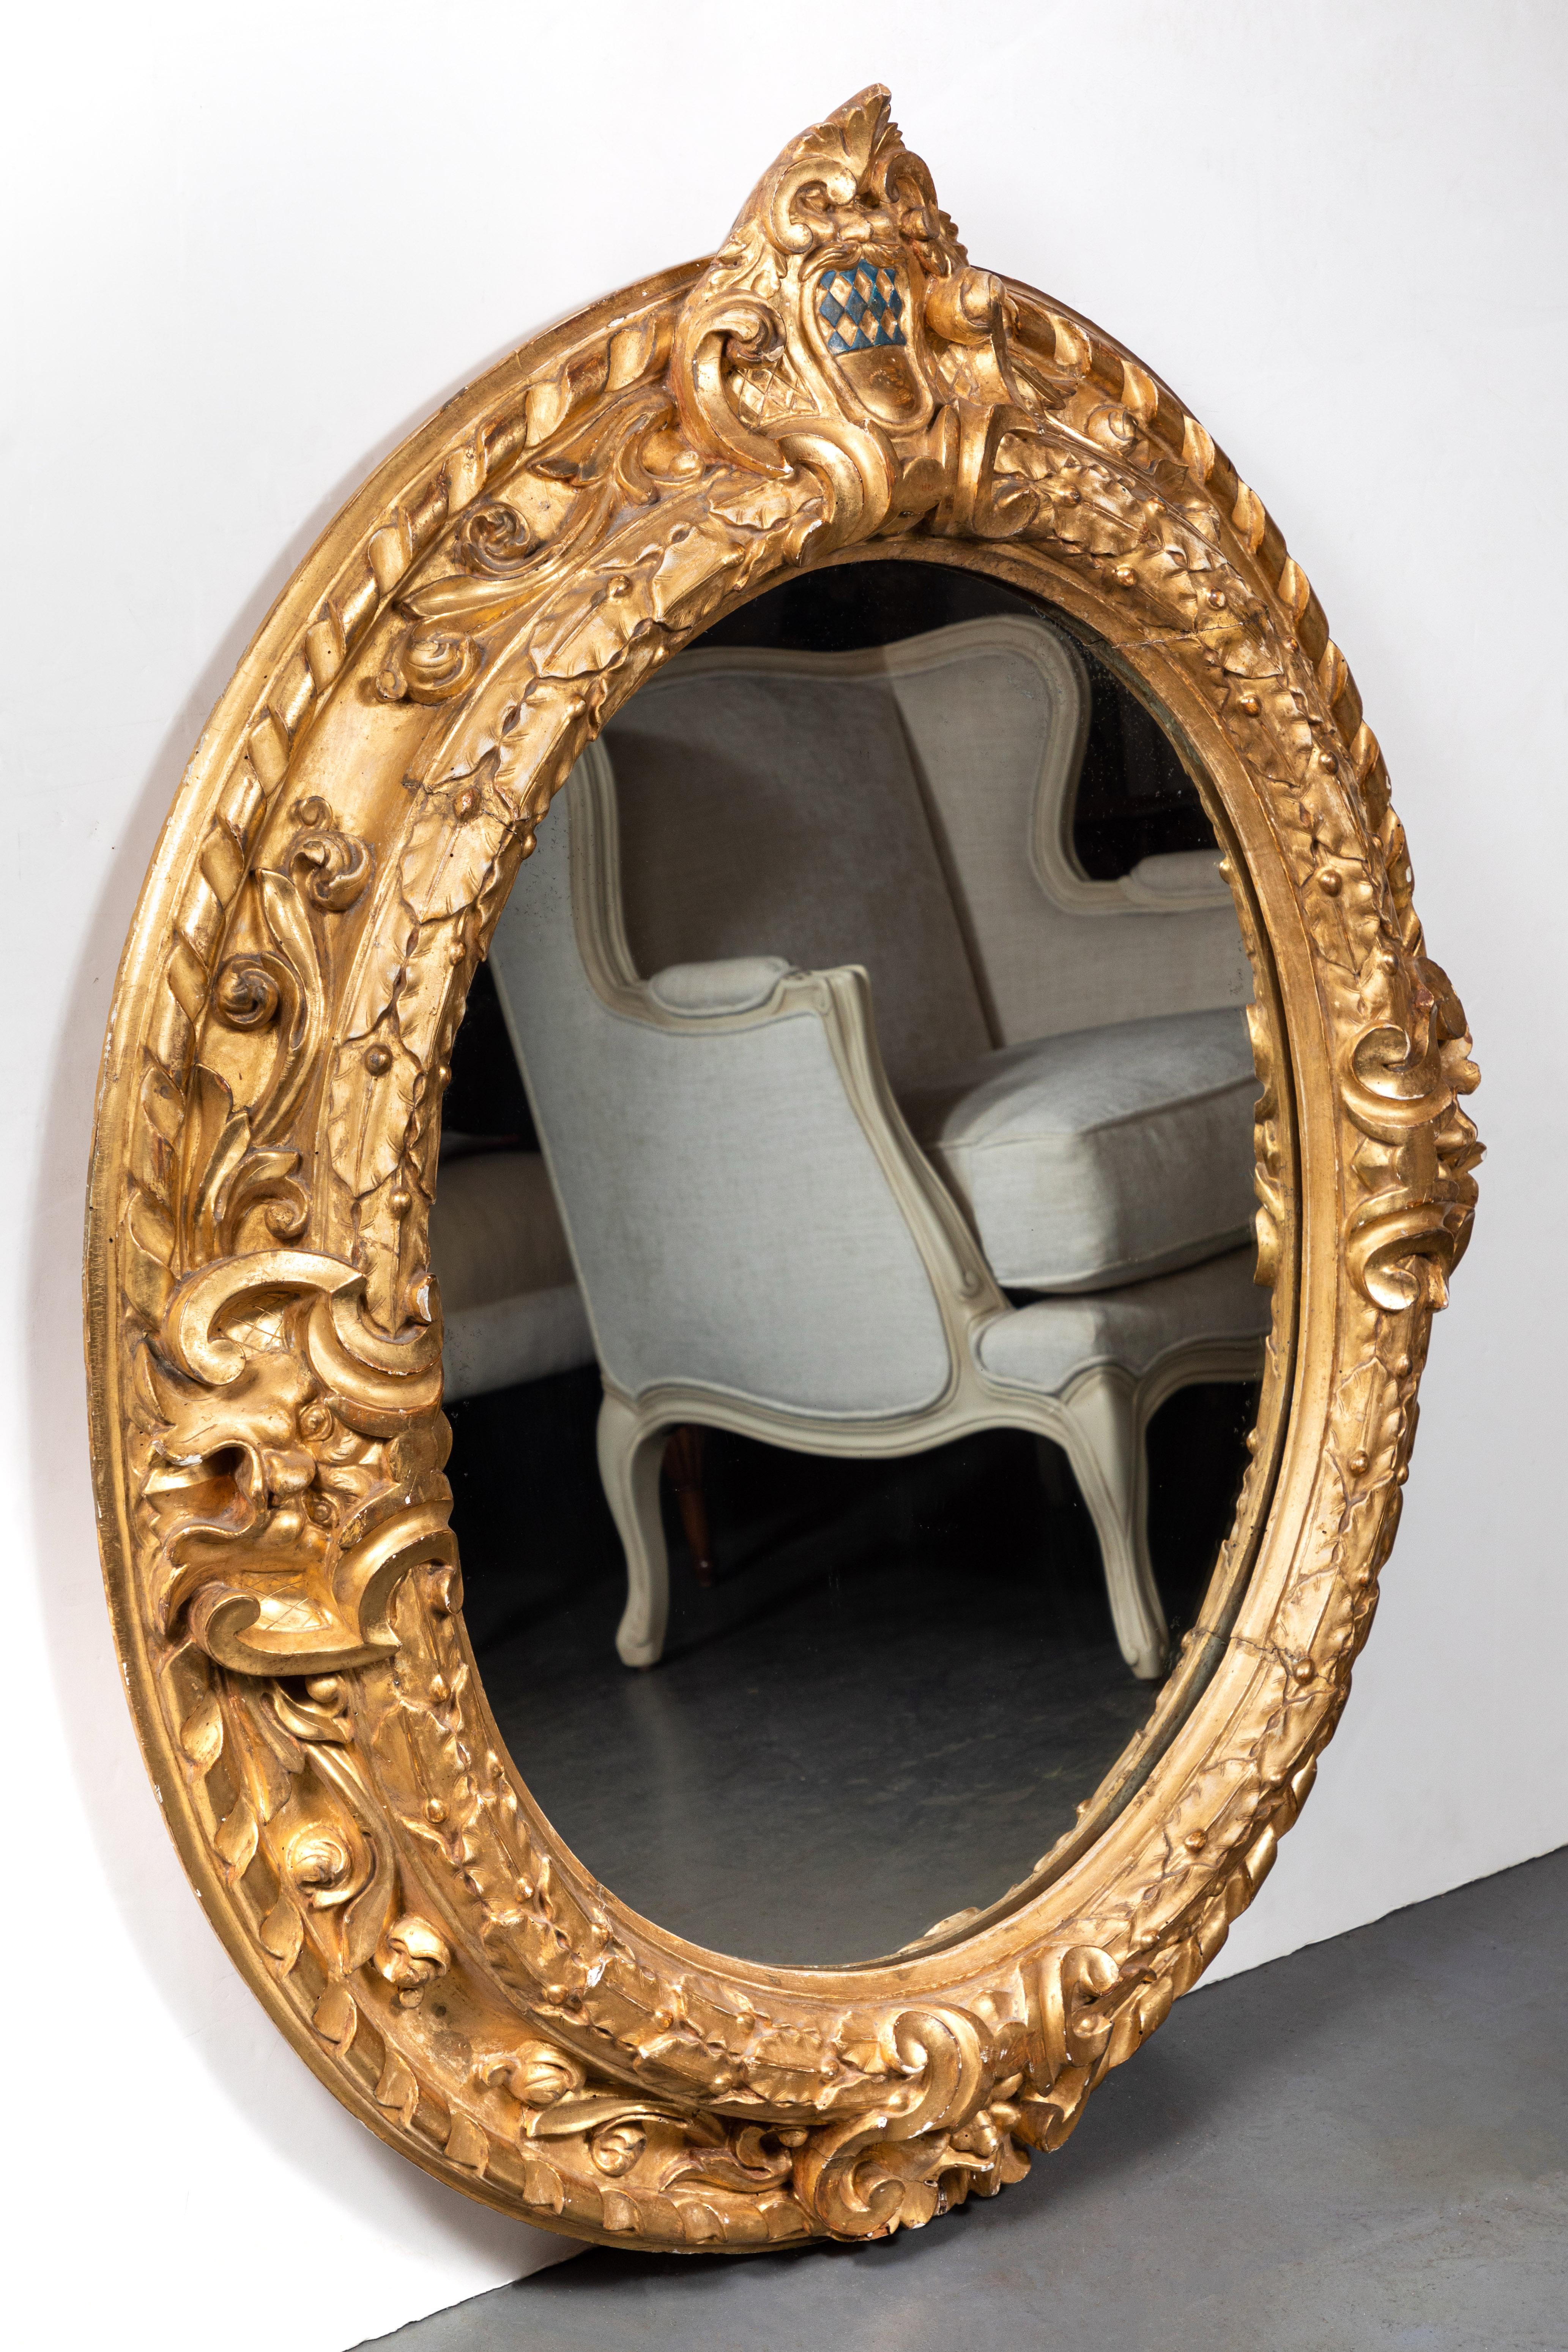 Grand cadre ovale italien, sculpté à la main et doré à l'or fin 22 carats, avec miroir encastré plus récent. La couronne présente un écusson peint à la main avec un motif matelassé de diamants verts. L'ensemble est orné de formes feuillues.